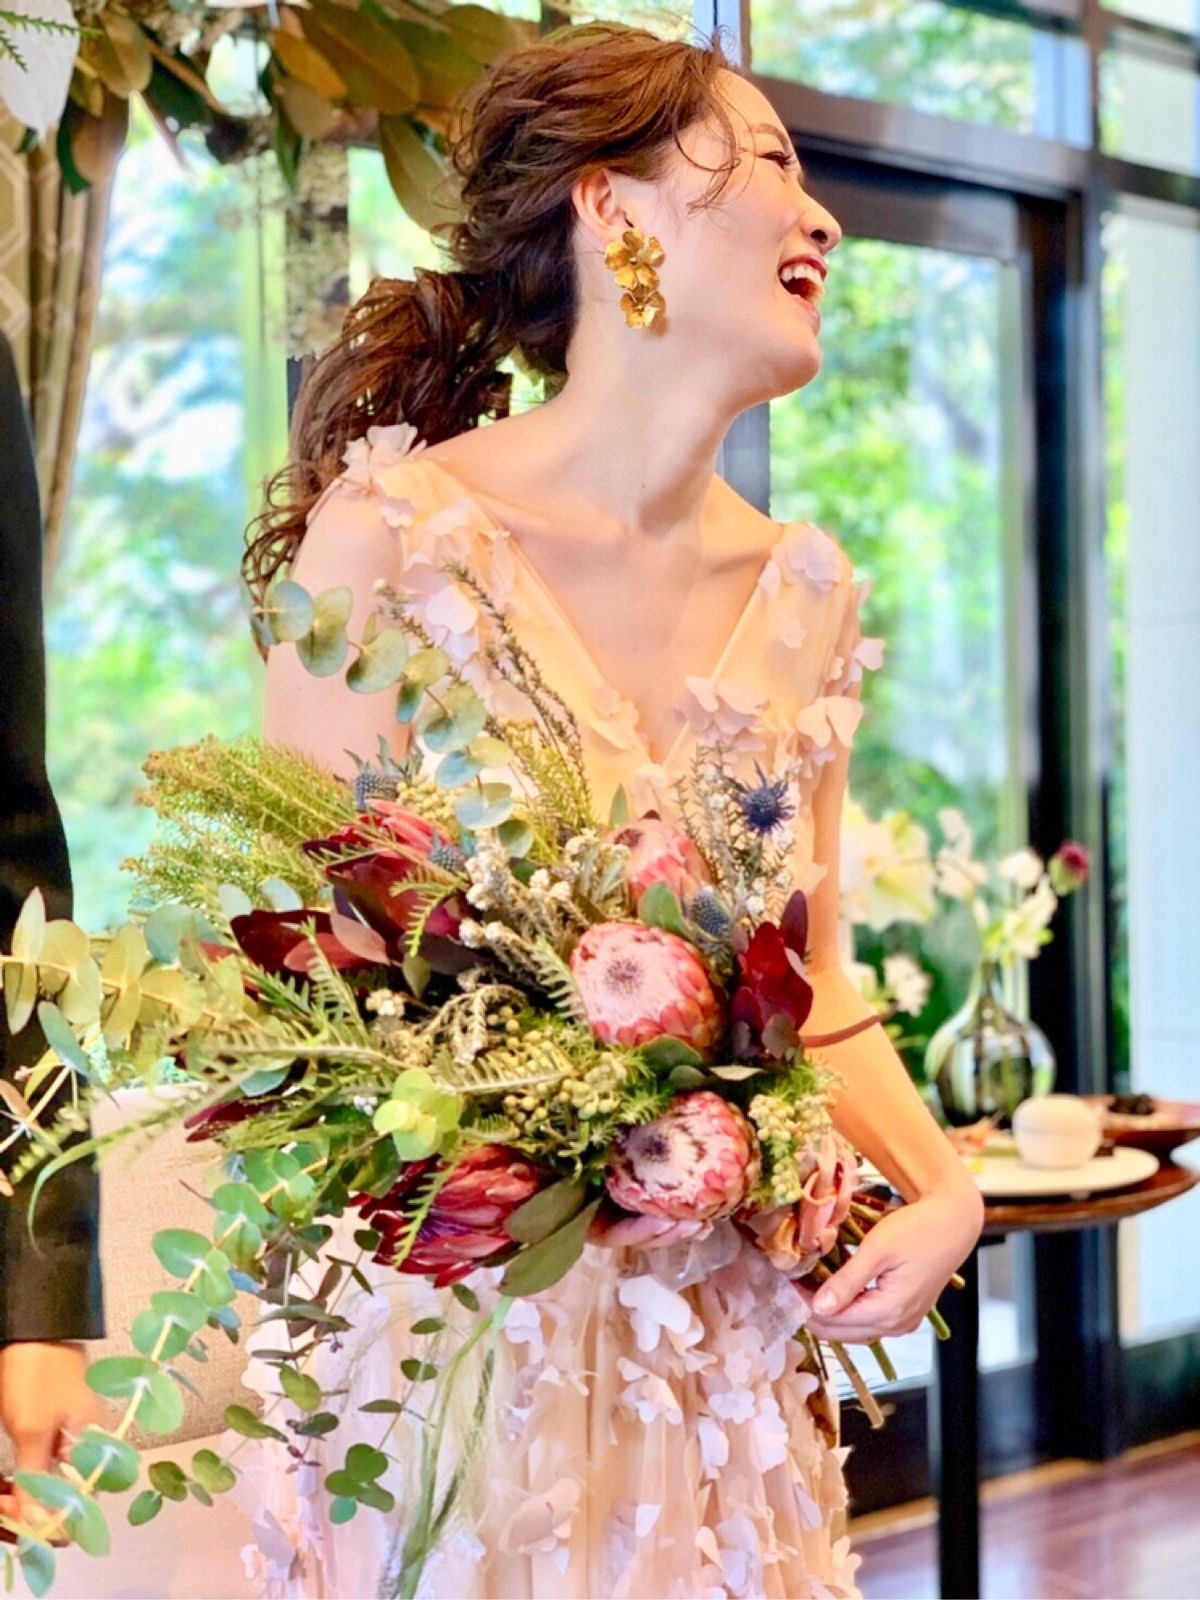 安い おしゃれ 長持ち 魅力満載の 造花ブーケ が人気 結婚式準備はウェディングニュース